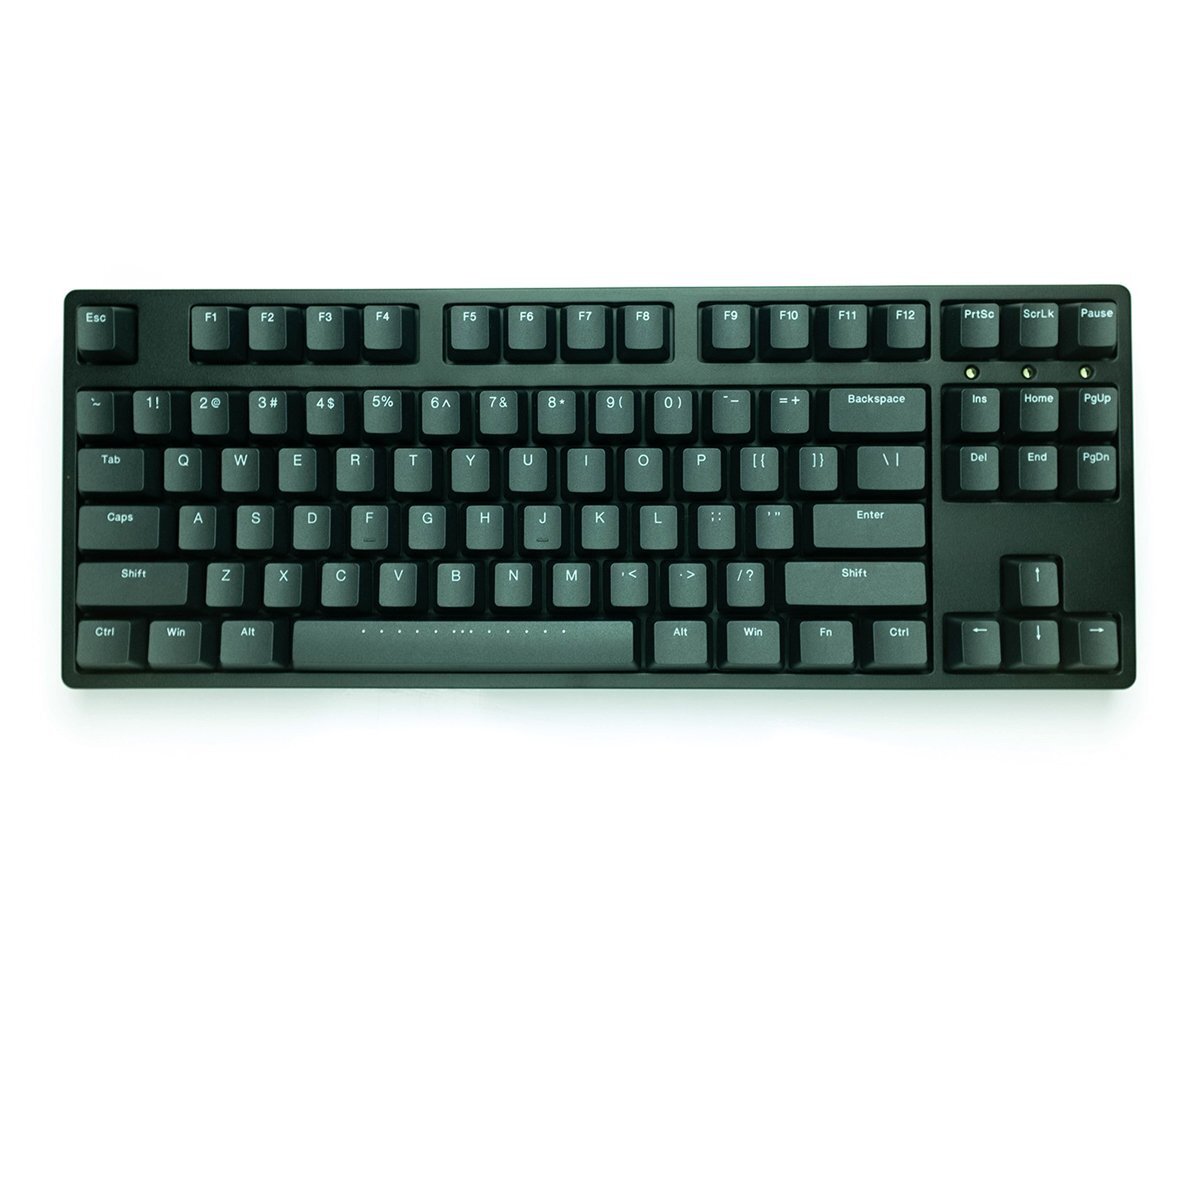 Bàn phím - Keyboard iKBC W200 Wireless